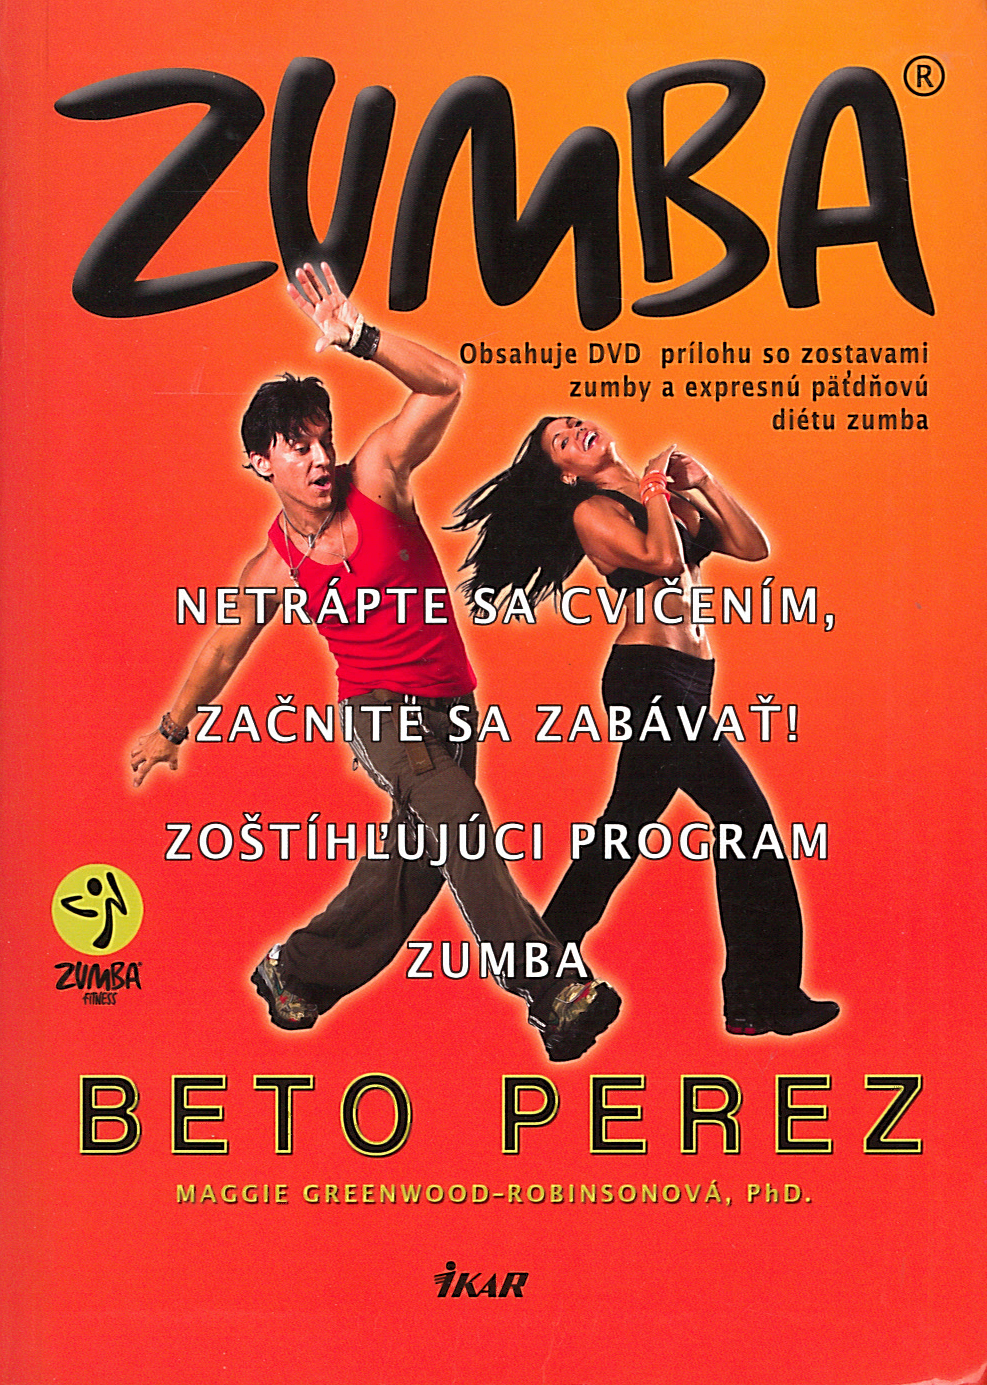 Zumba (Maggie Greenwood-Robinsonová Beto Perez)